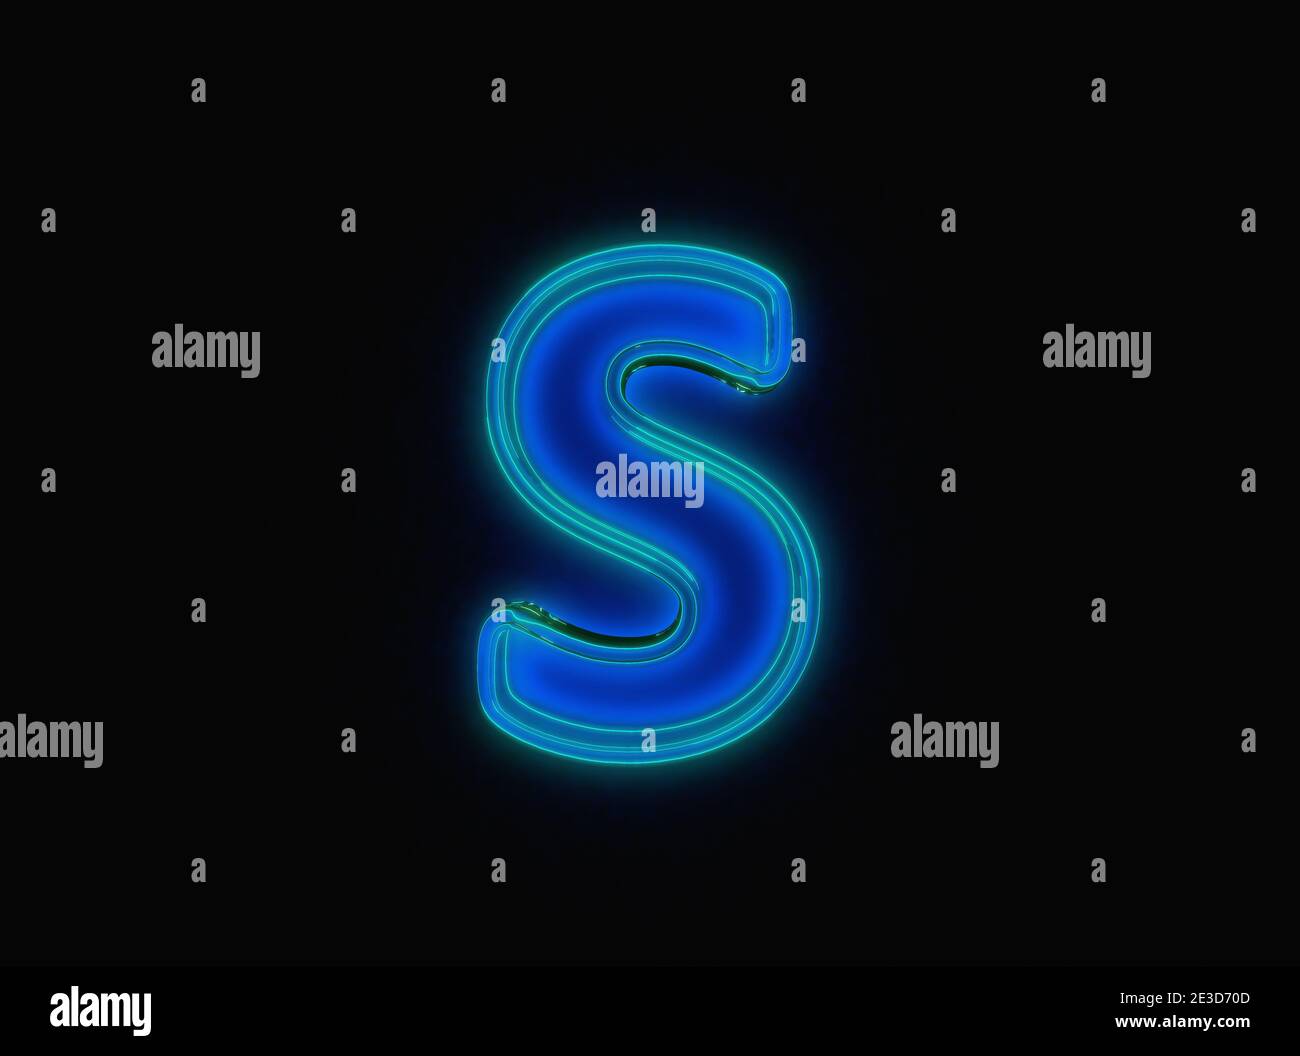 Blau - grün Neon Licht leuchten reflektierende klare Schrift - Buchstabe S isoliert auf schwarz dunkel, 3D-Darstellung von Symbolen Stockfoto